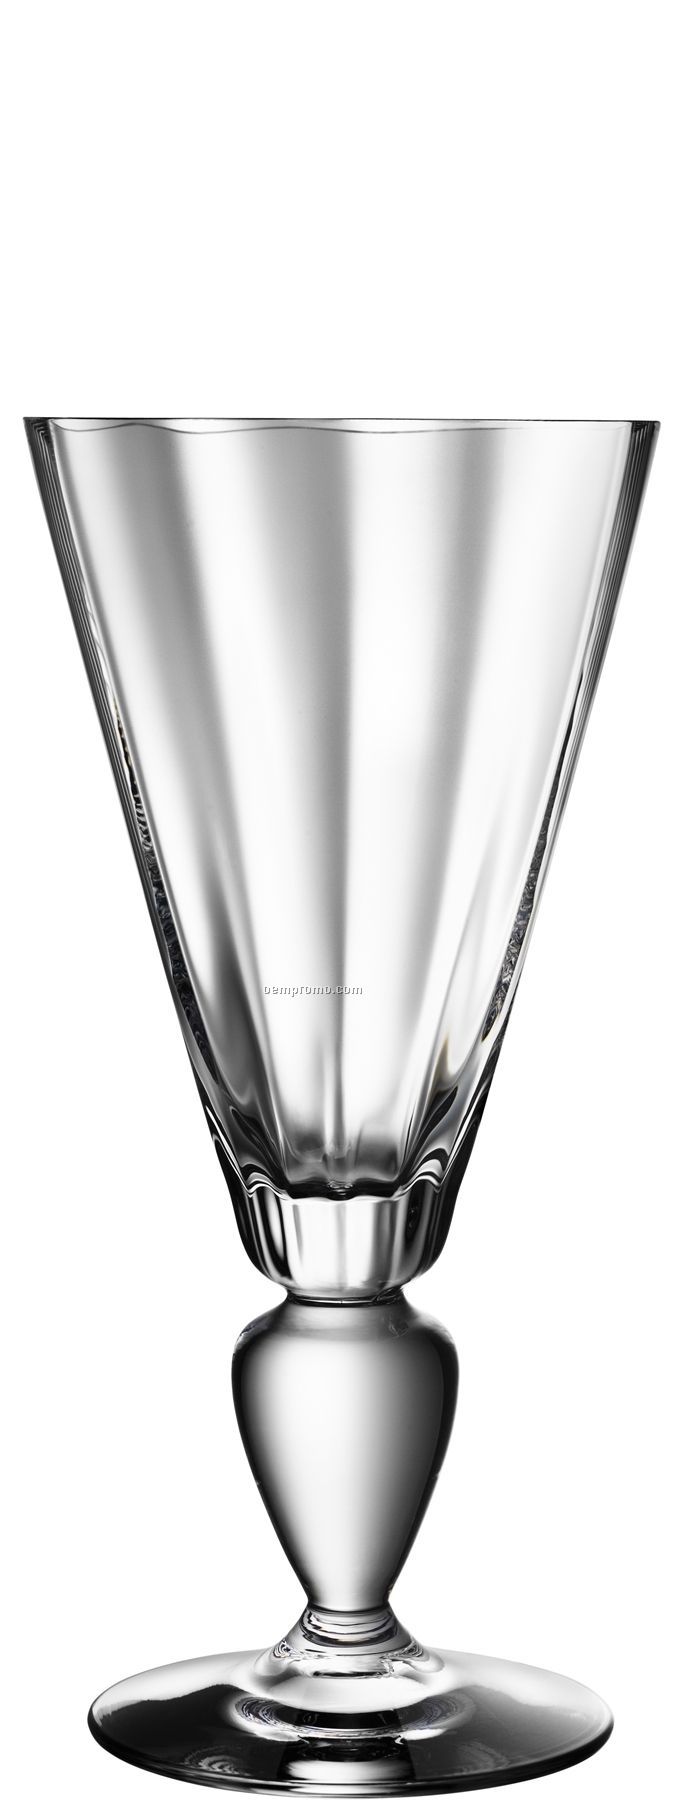 Linne Glass Goblet Stemware W/ Bulb Pedestal Stem By Goran Warff